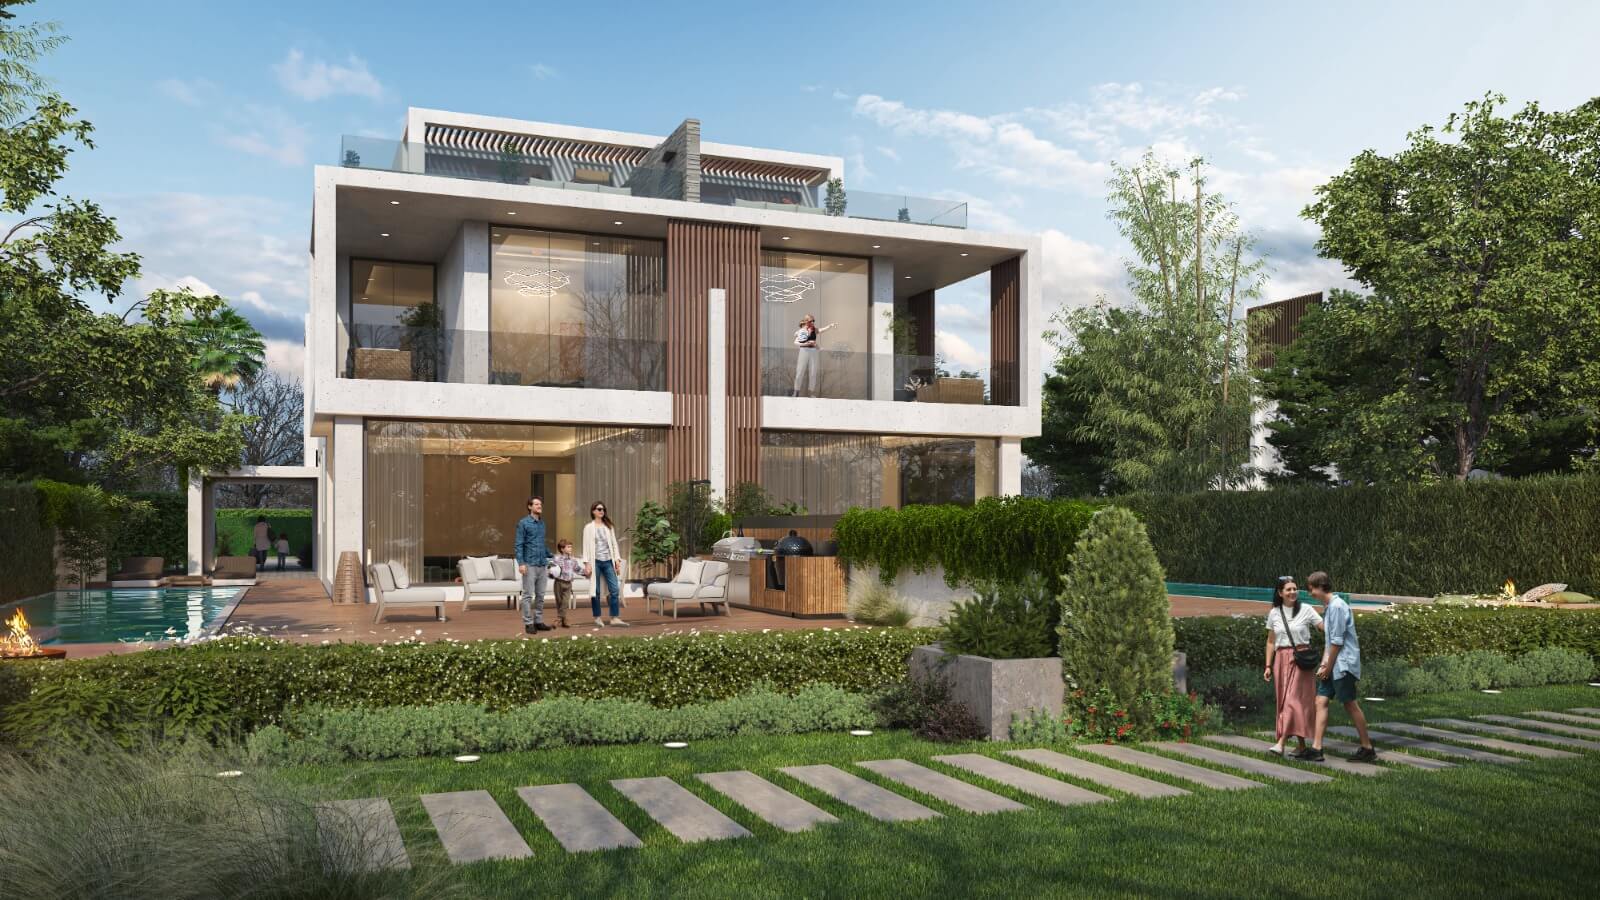 للبيع فيلا 4 غرف تاون هاوس في دبي | Villa for sale in Dubai land on Al Ain Street